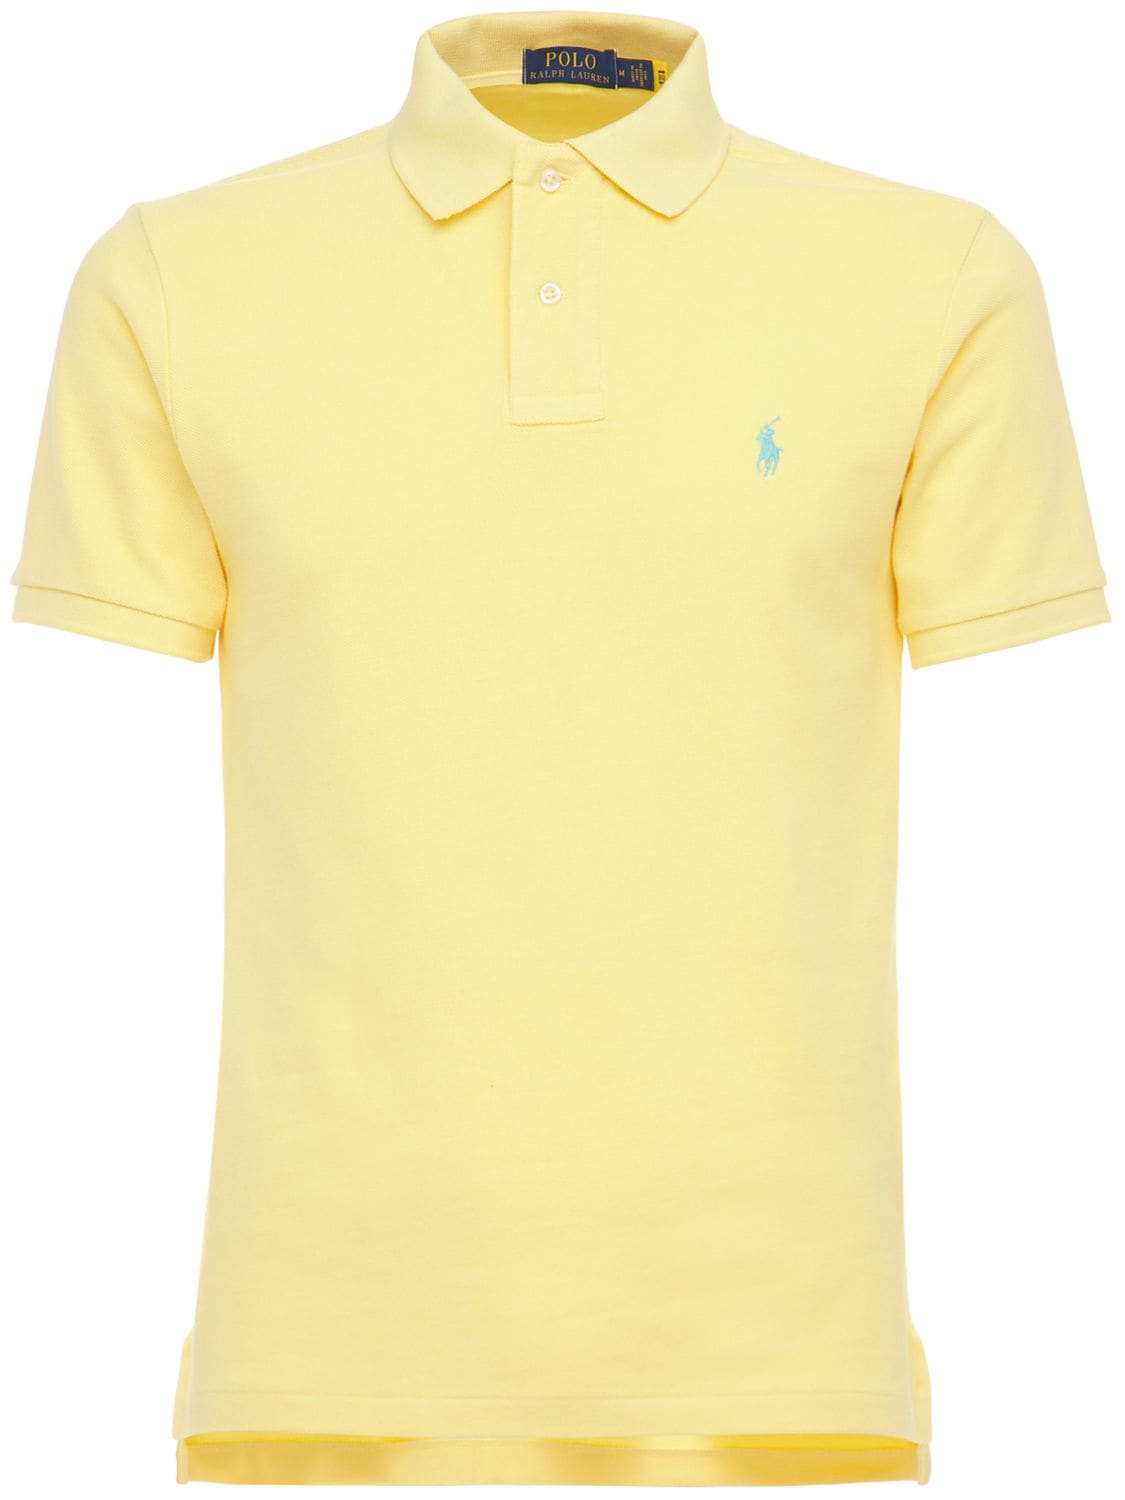 Polo Ralph Lauren Cotton Piquet Polo Shirt In Empire Yellow